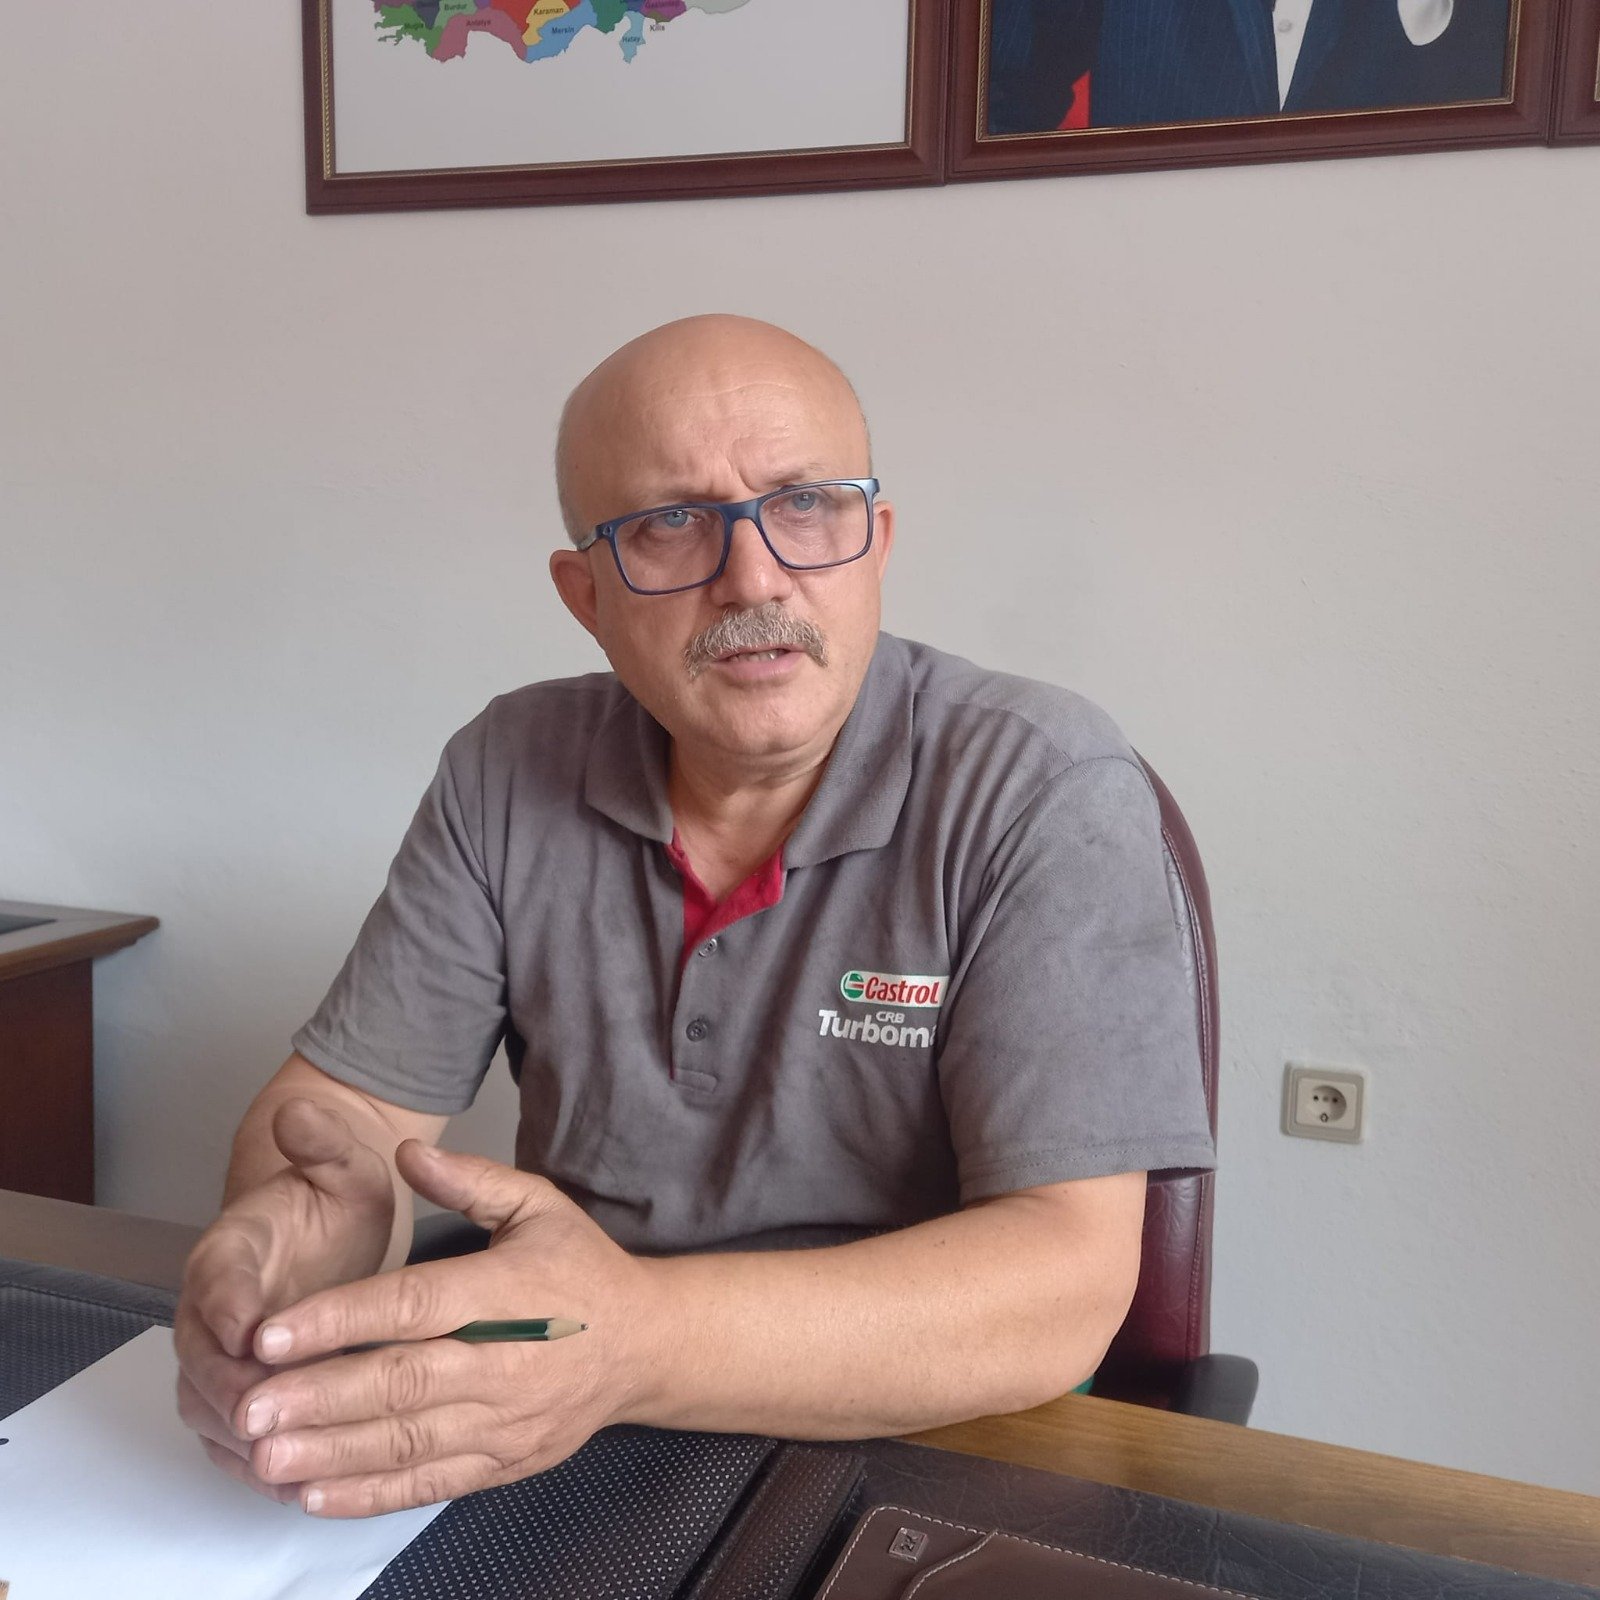 Artvin Sanayi Sitesi Esnaflarından İsmail Ustael’den Devlete Çağrı